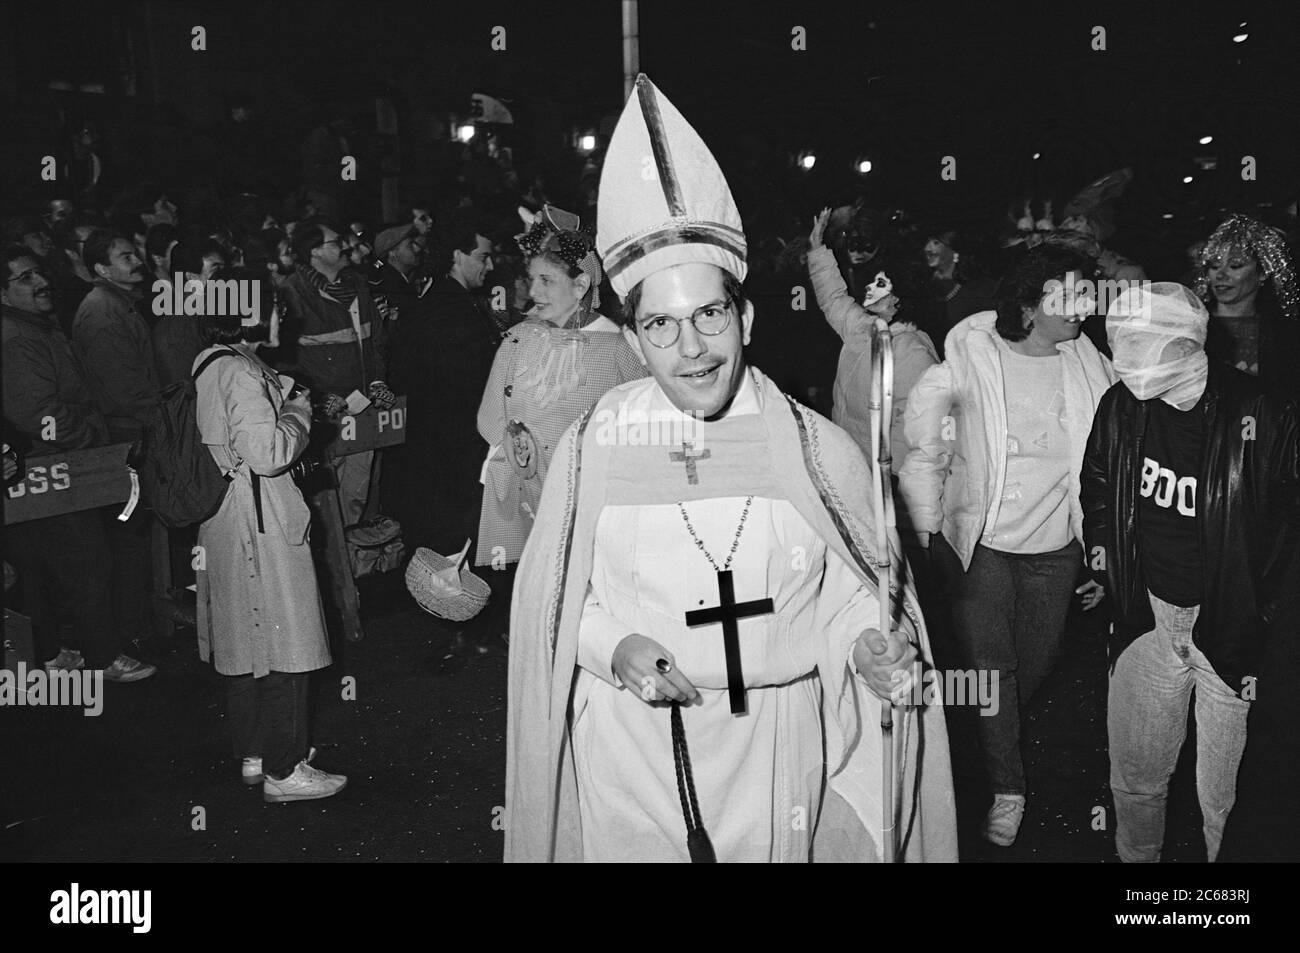 Costume cardinale alla Greenwich Village Halloween Parade, New York City, USA negli anni '80 fotografato con film in bianco e nero di notte. Foto Stock